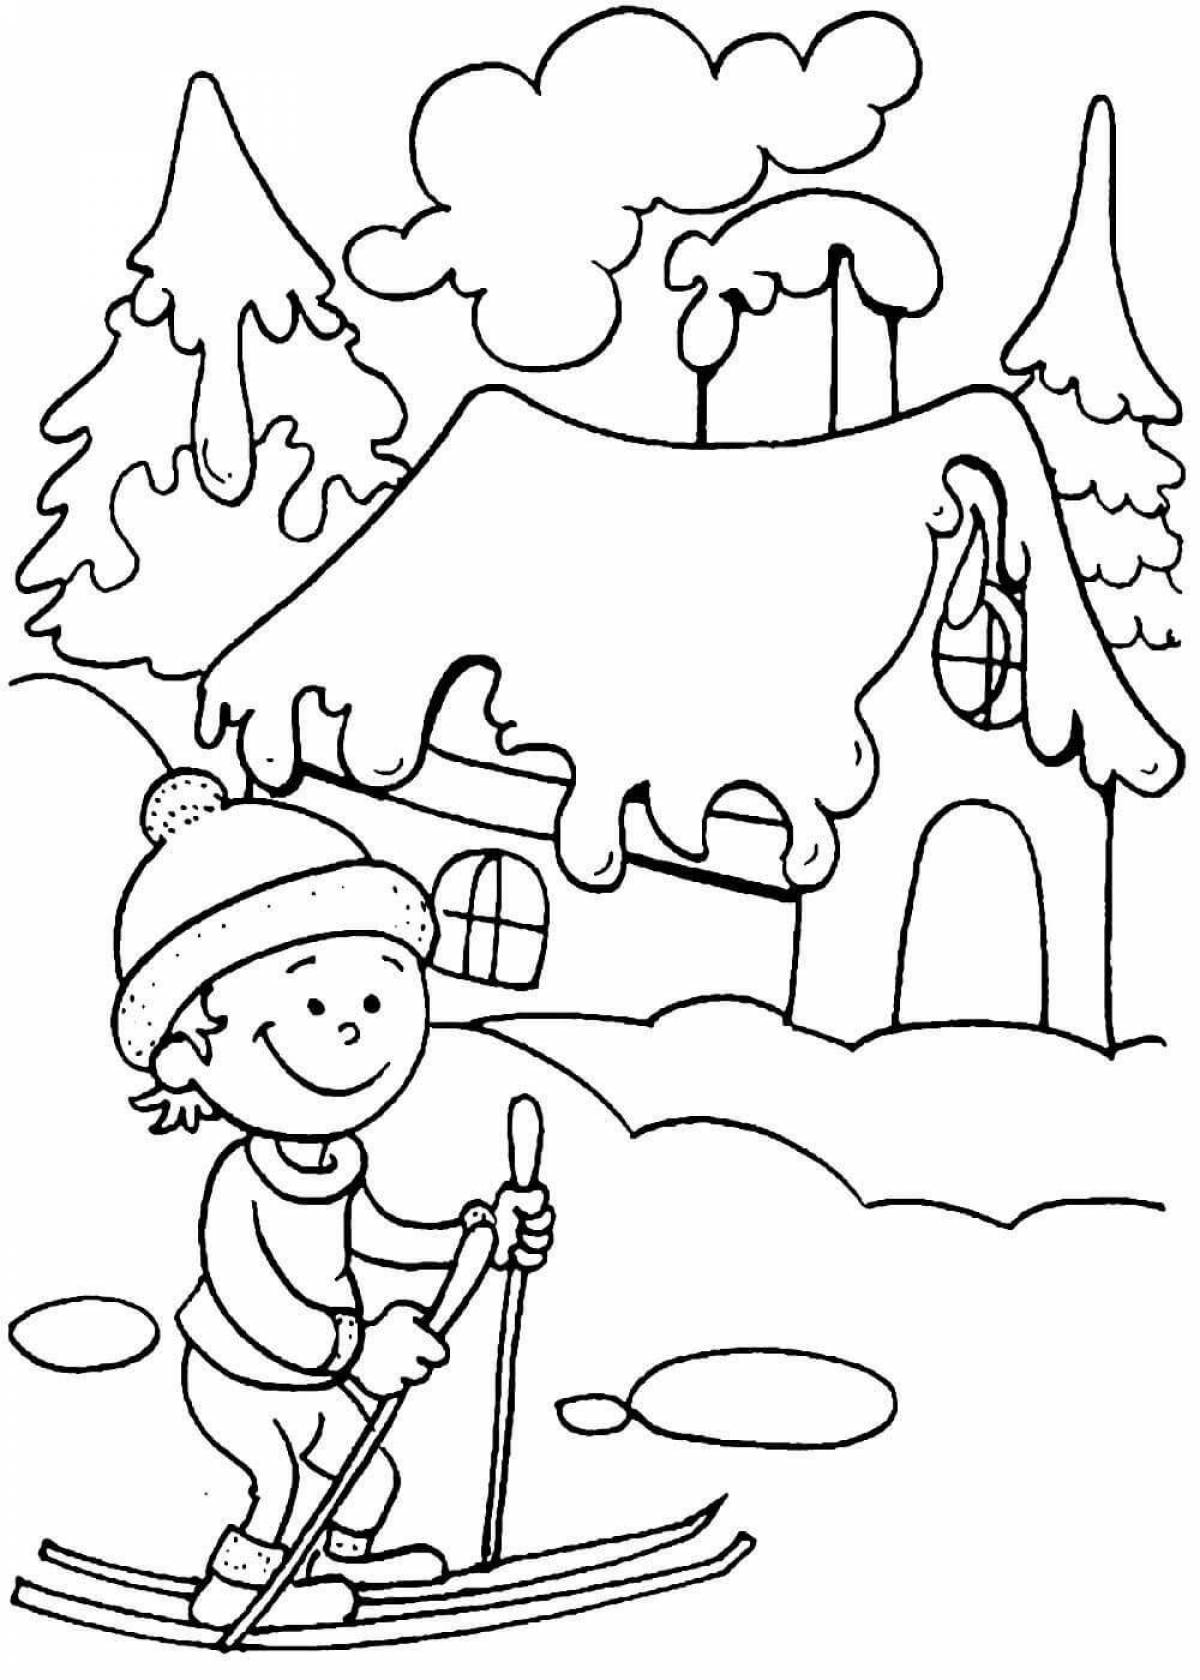 Увлекательная раскраска зимний пейзаж для детей 6-7 лет